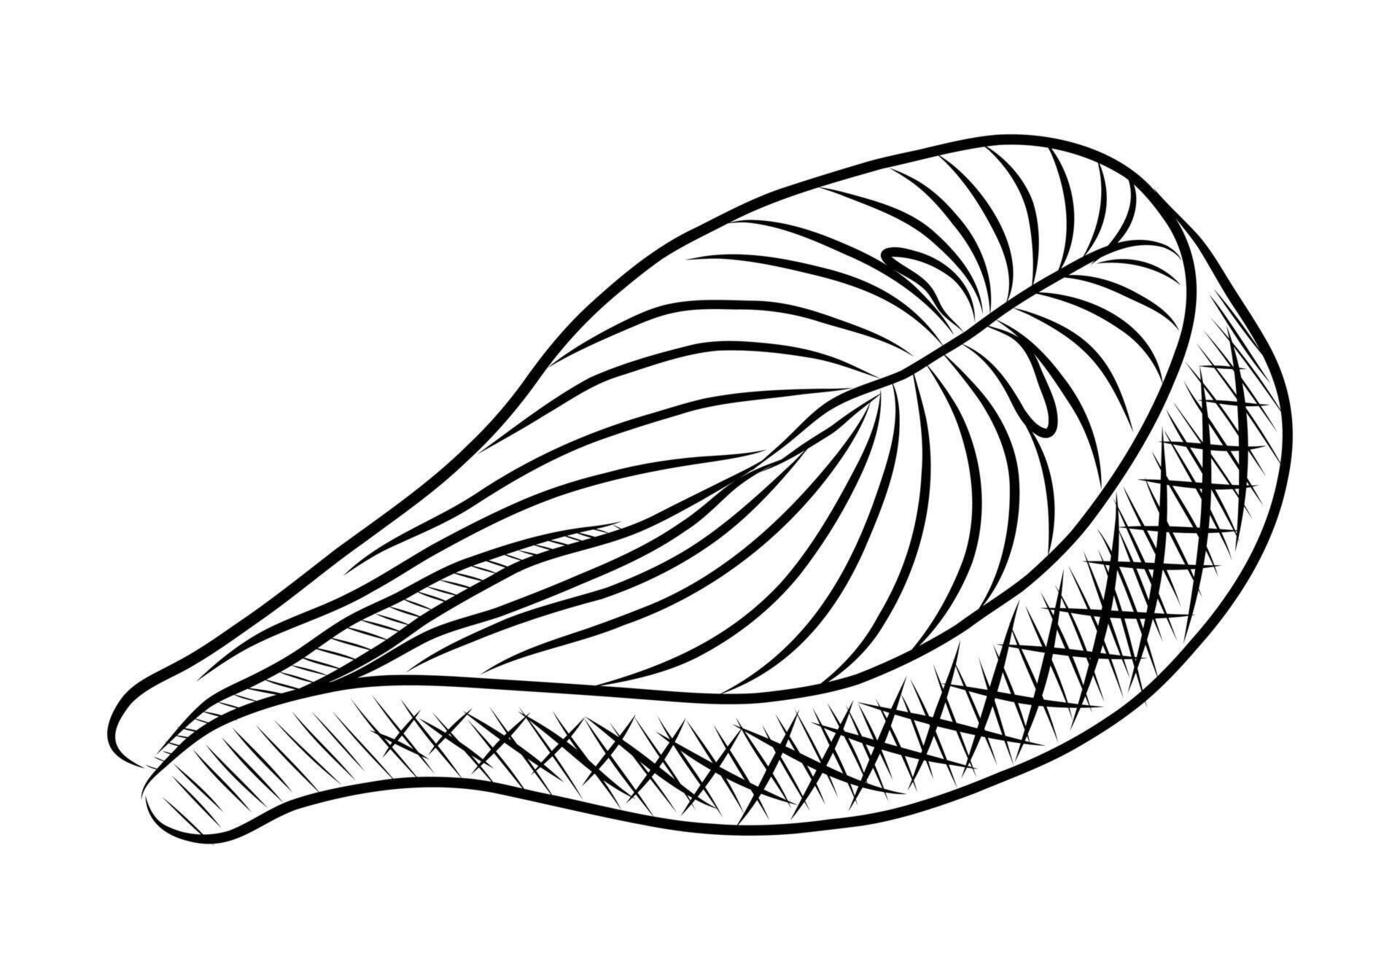 svart och vit vektor teckning av en lax skiva